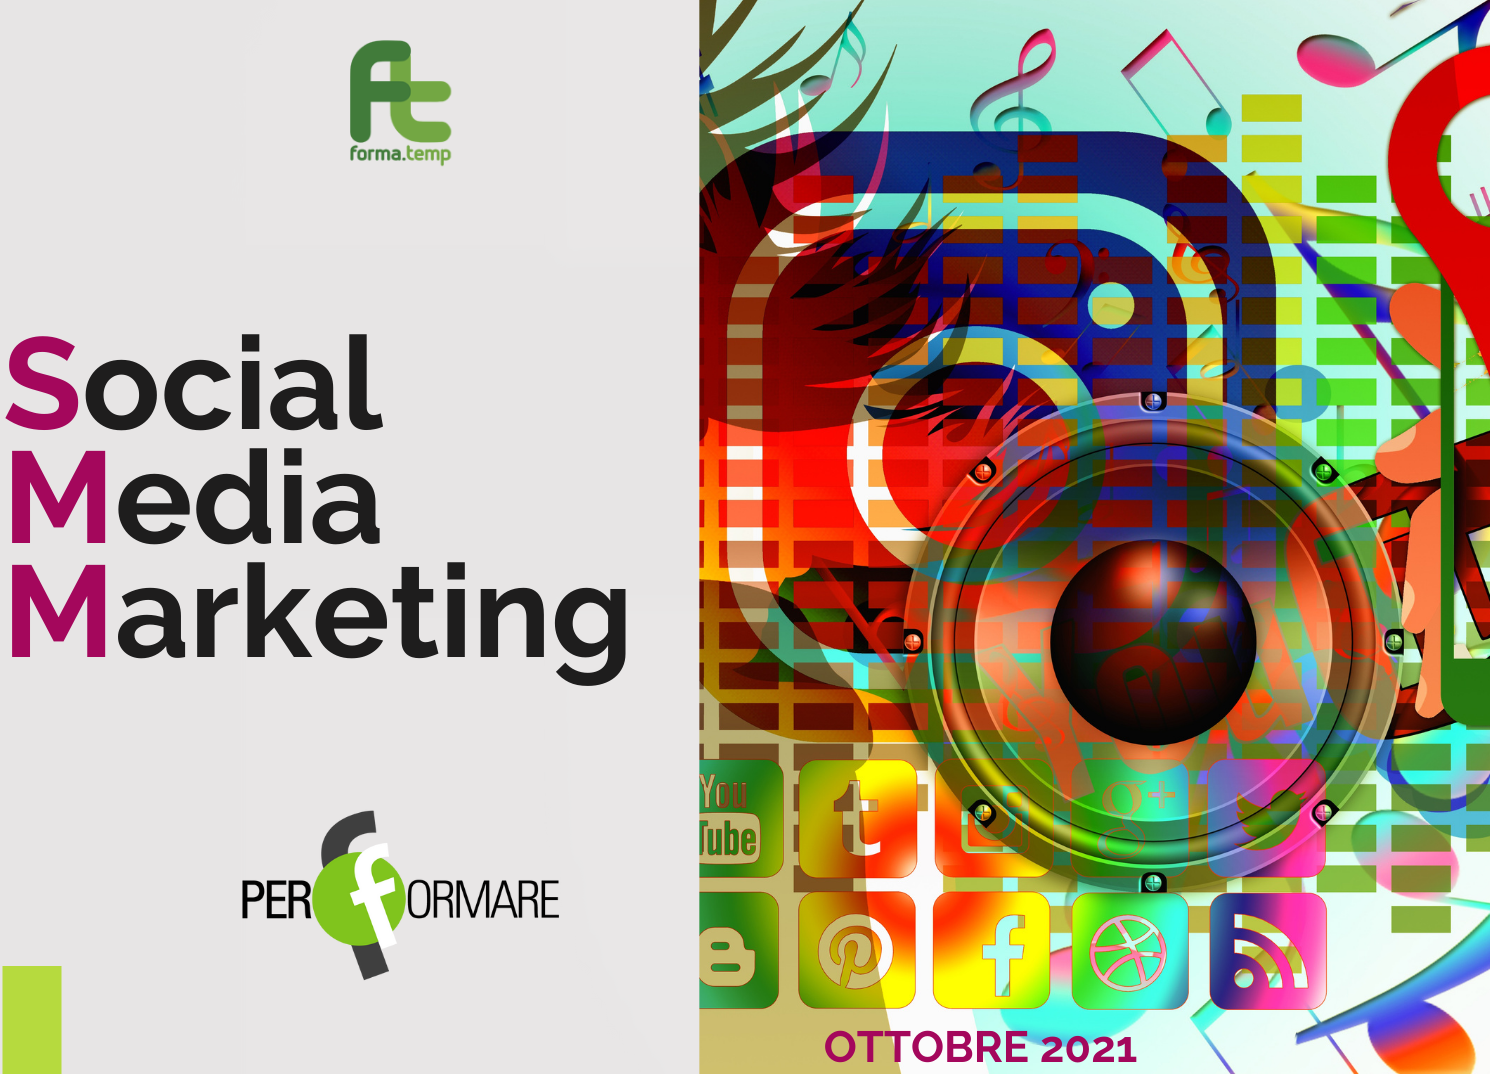 Social Media Marketing - FormaTemp - 2021